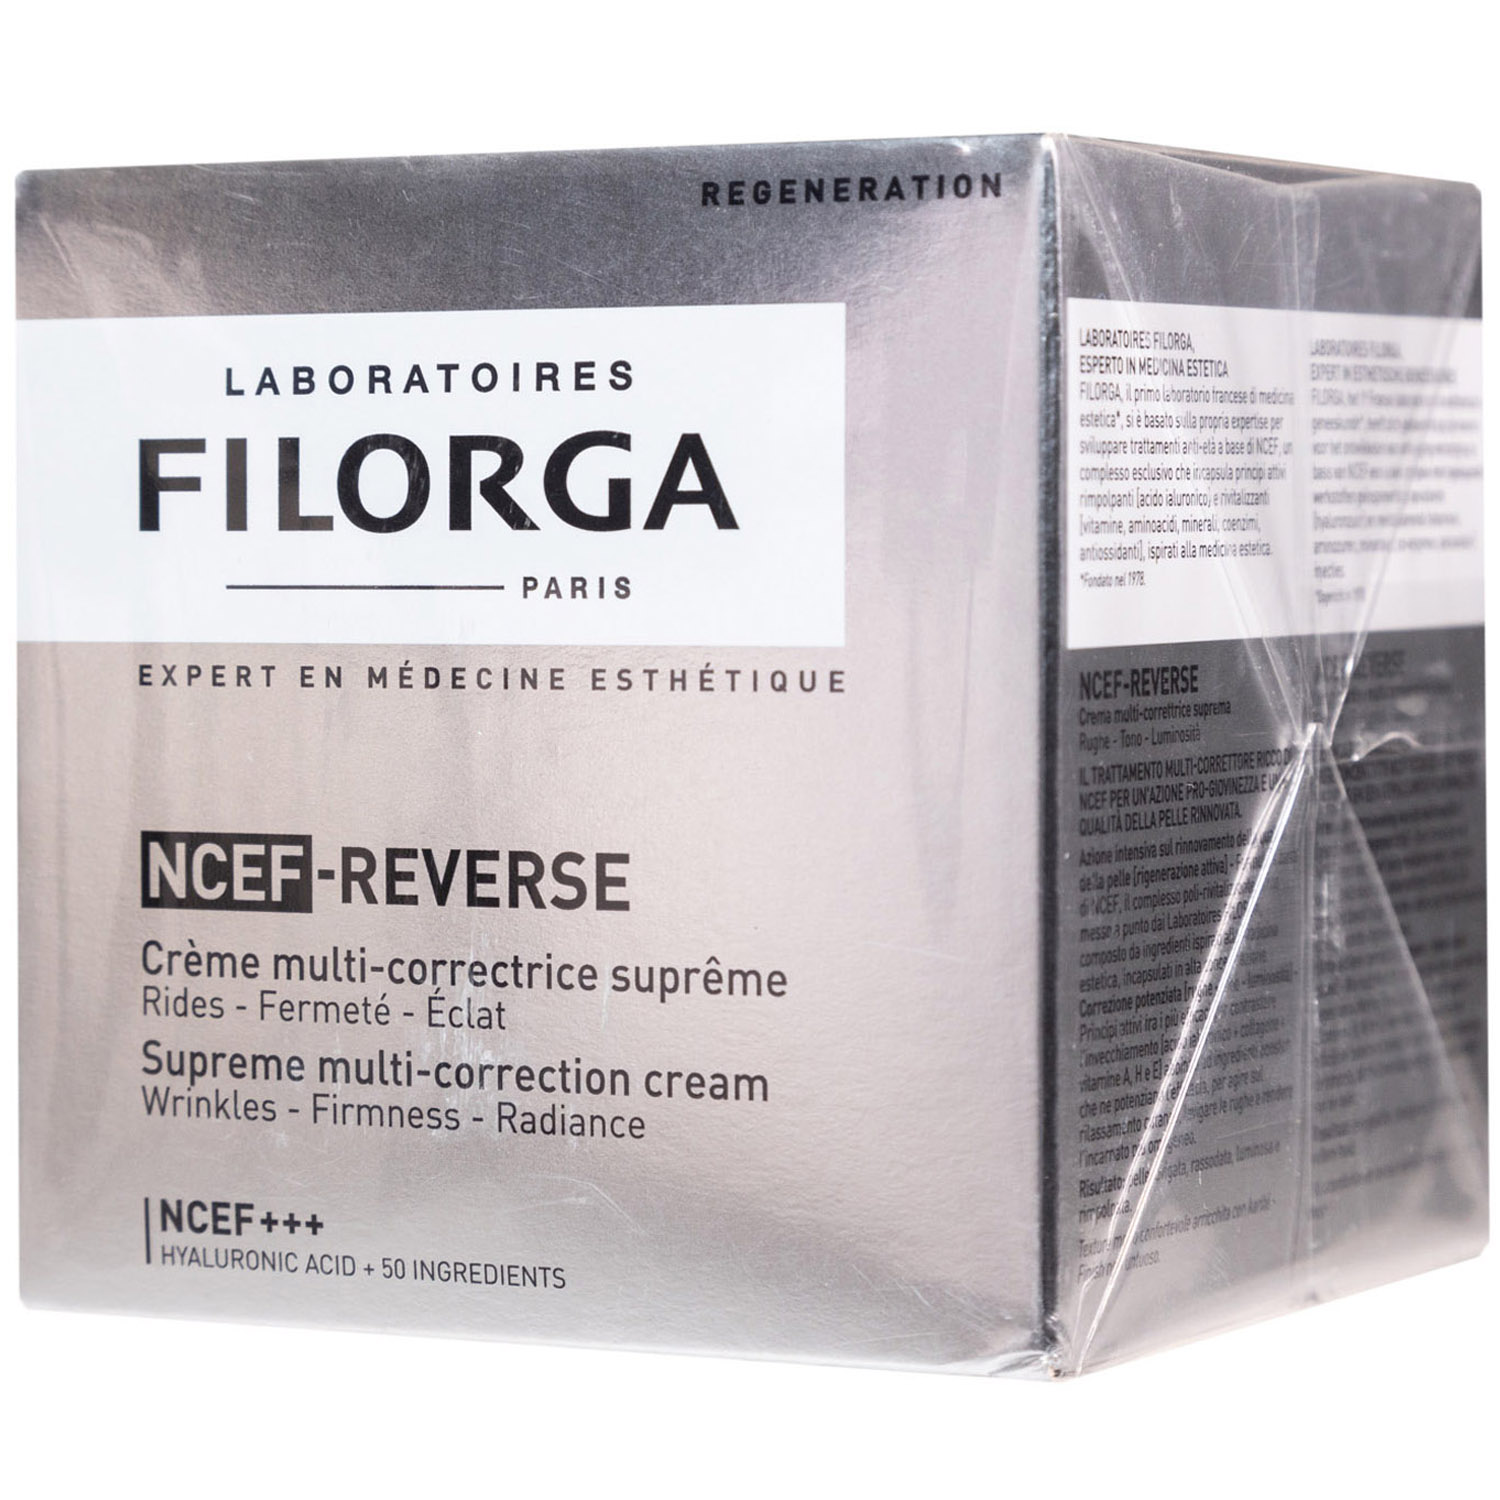 Filorga Идеальный восстанавливающий крем Reverse, 50 мл (Filorga, Filorga NCЕF)